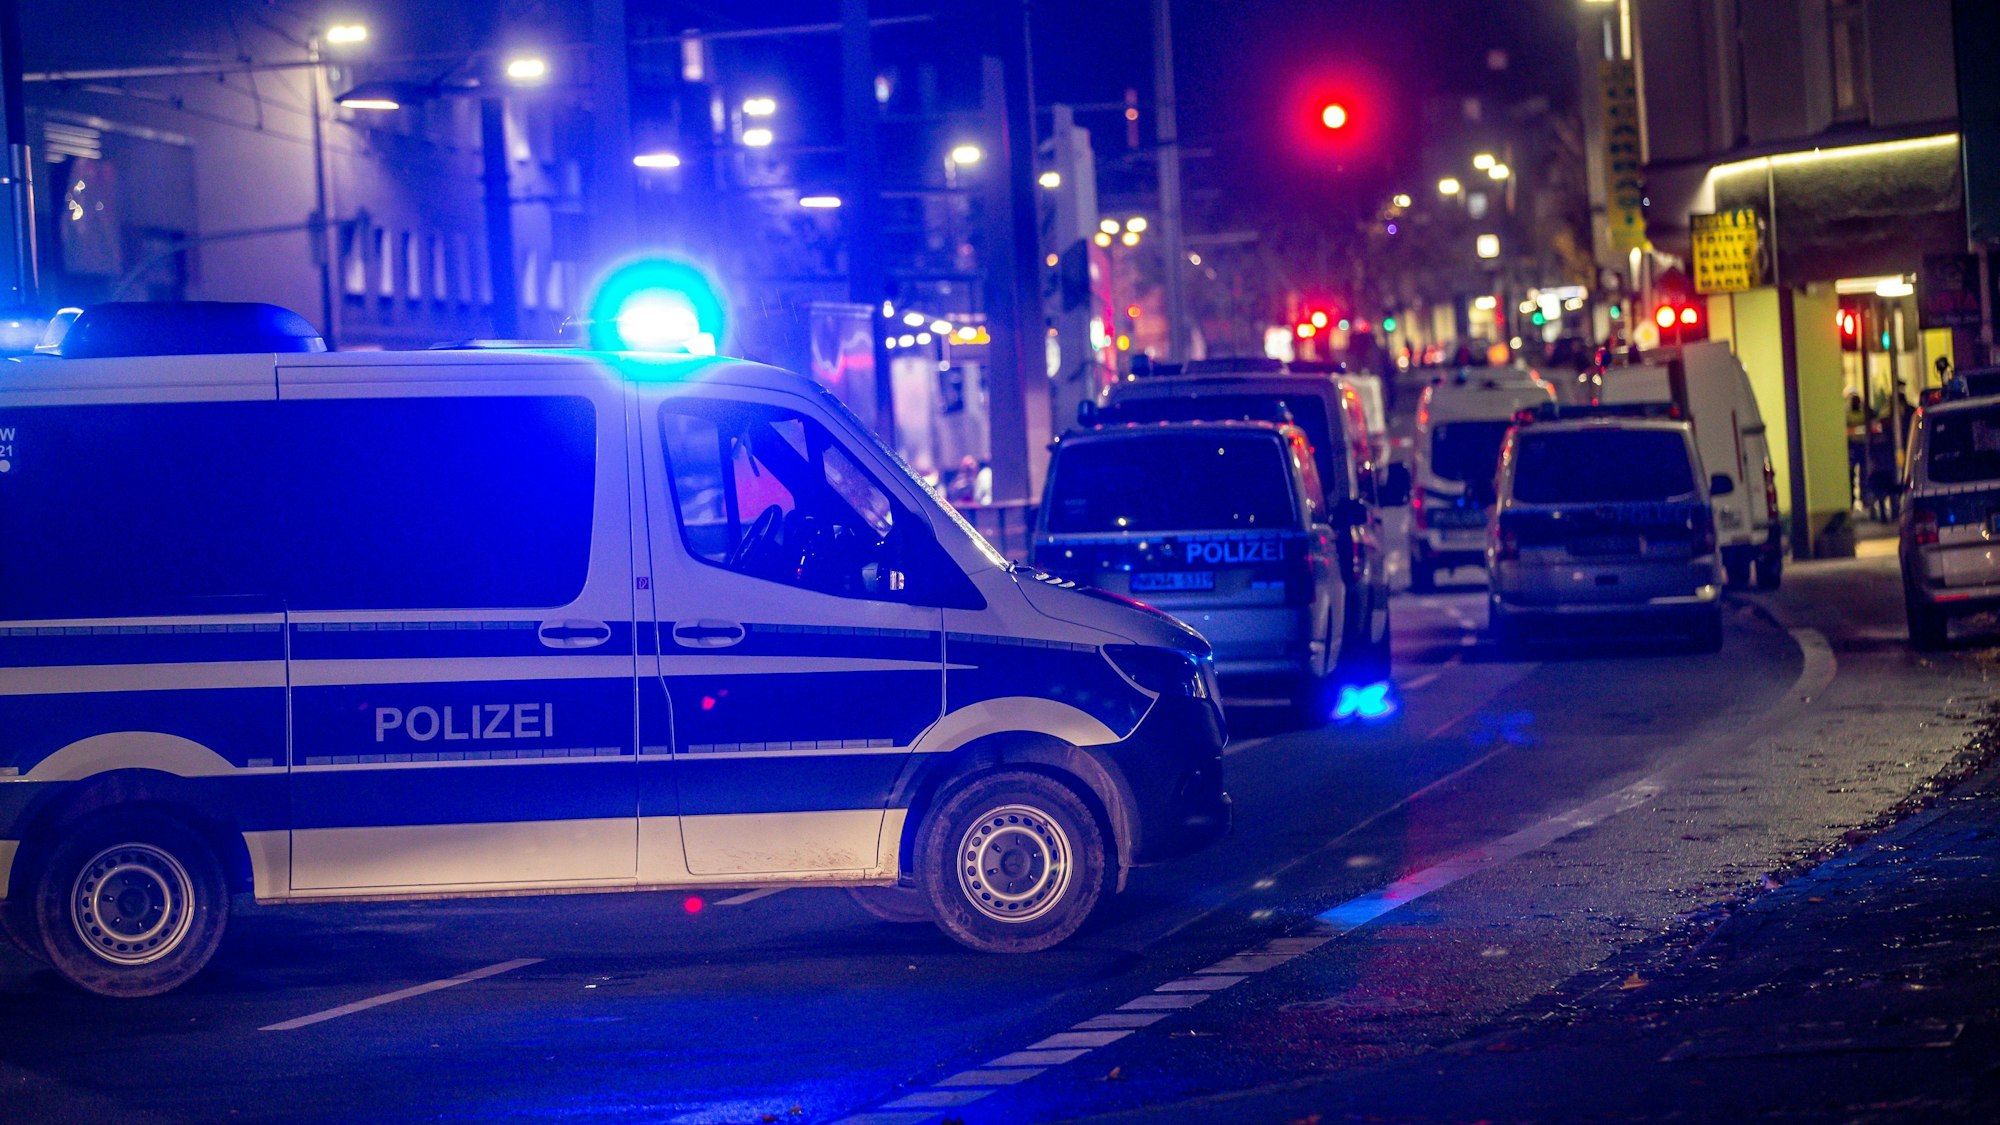 Das Symbolfoto, aufgenommen am 21. November 2021 in Dortmund, stellt ein Polizeiauto mit blinkendem Blaulicht auf einer Hauptstraße bei Nacht dar.